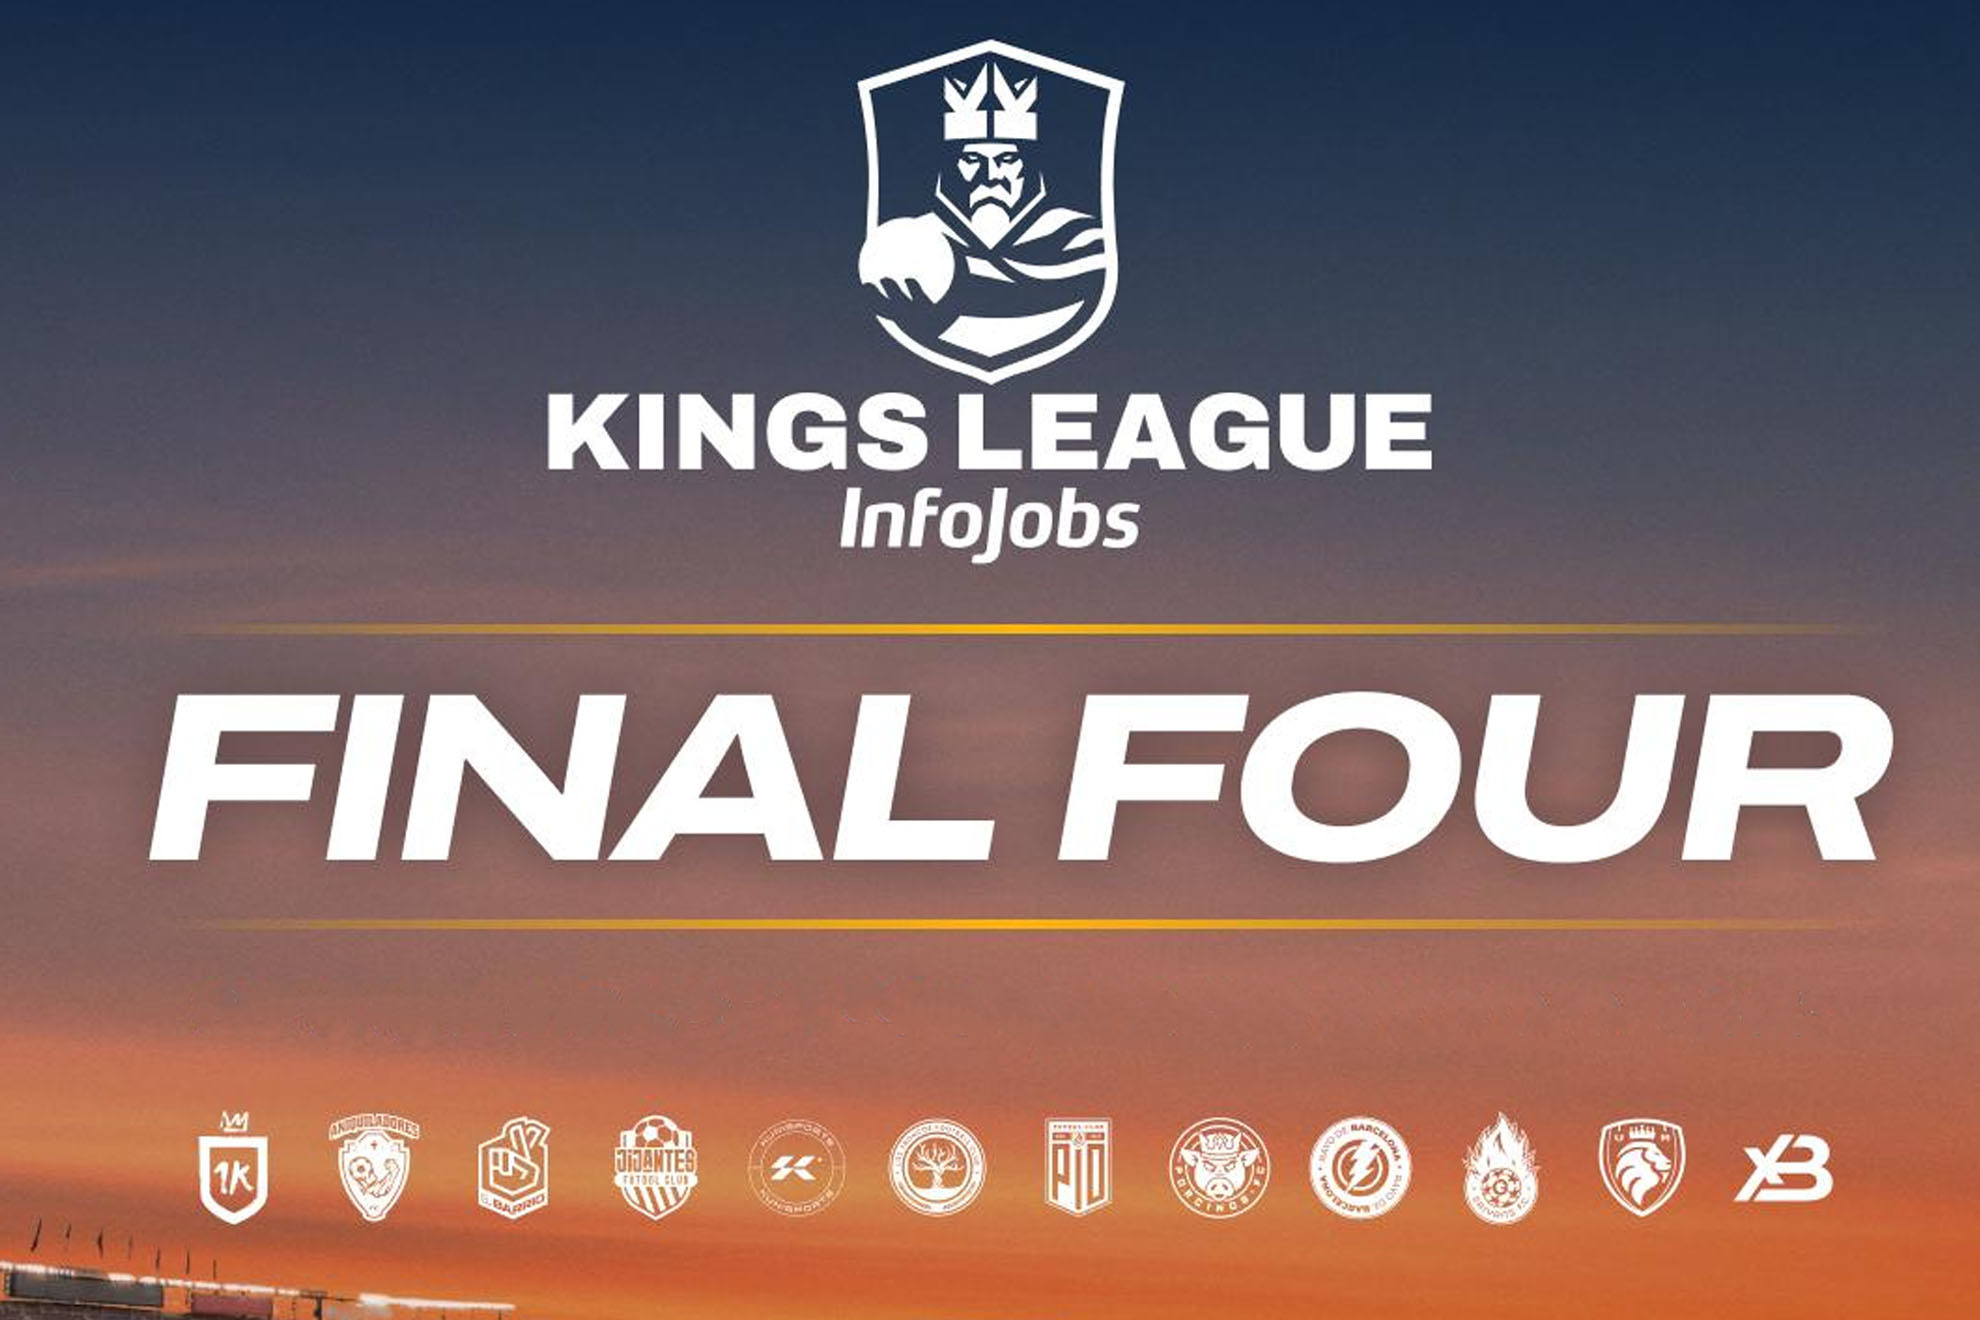 Final Four de la Kings League InfoJobs: fechas, horarios, equipos, partidos y dónde ver en directo online